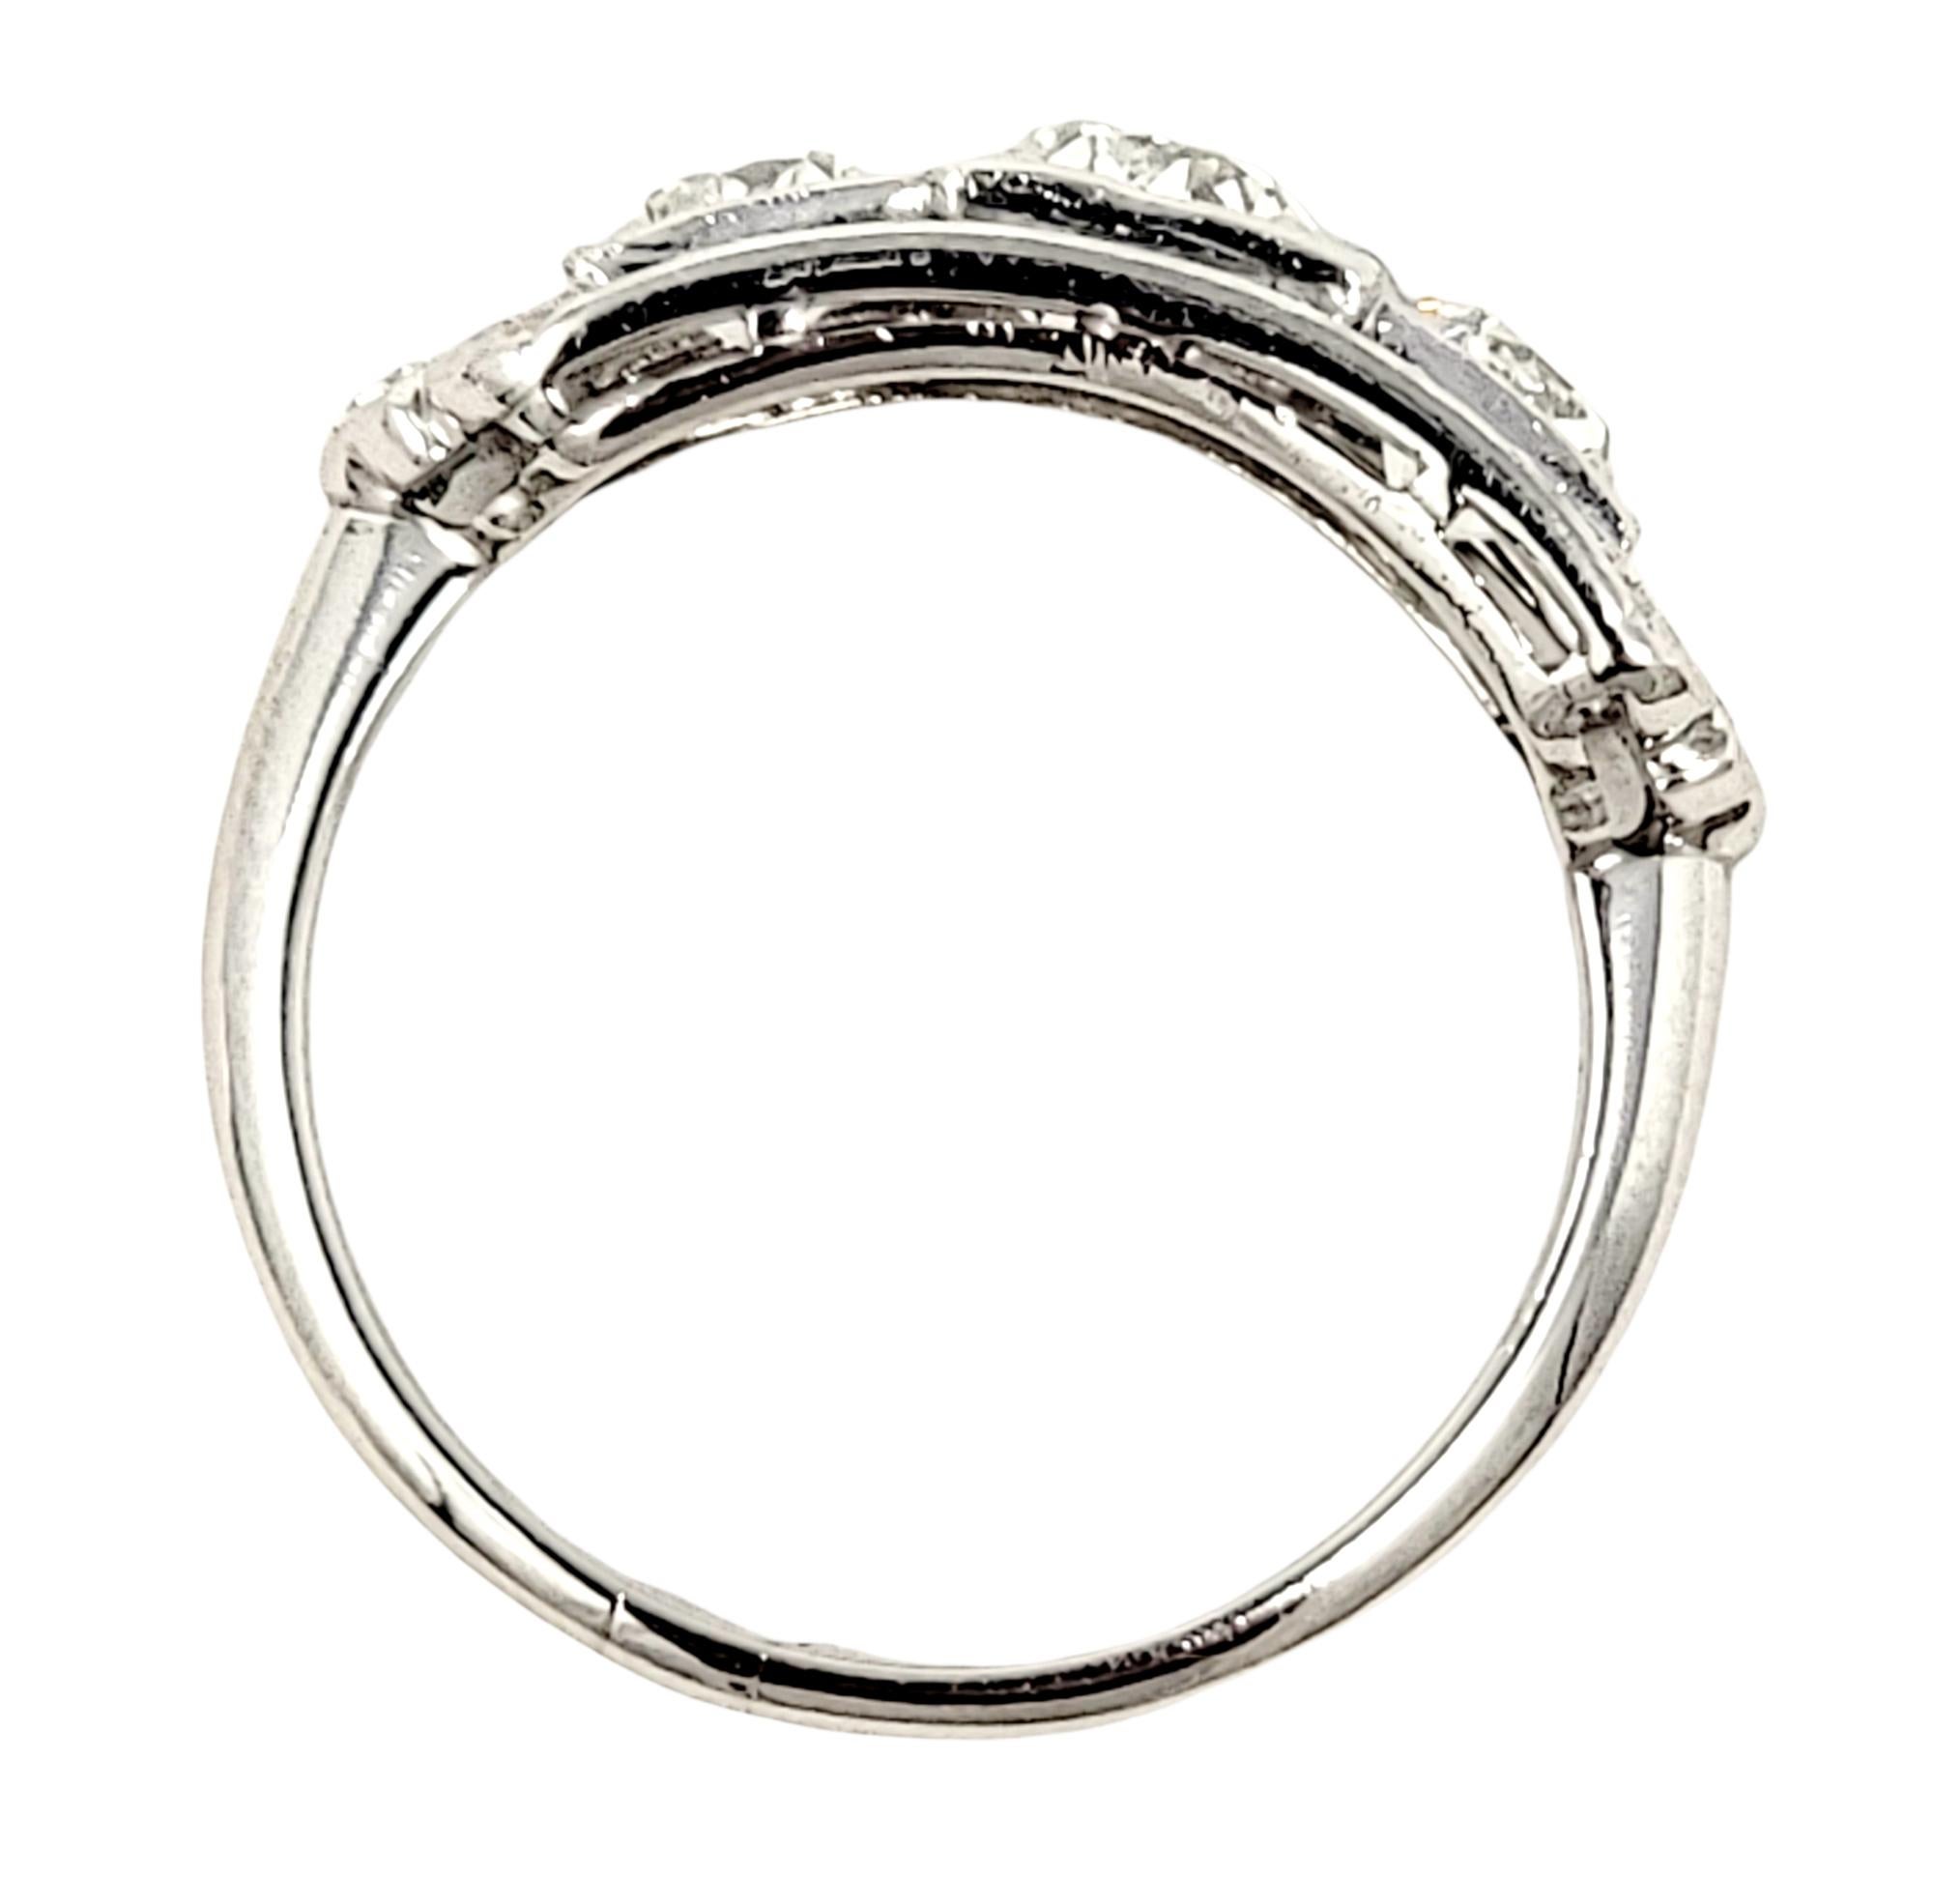 Edwardian 1.51 Carat Total Vintage Old European Cut Diamond Three Stone Engagement Ring